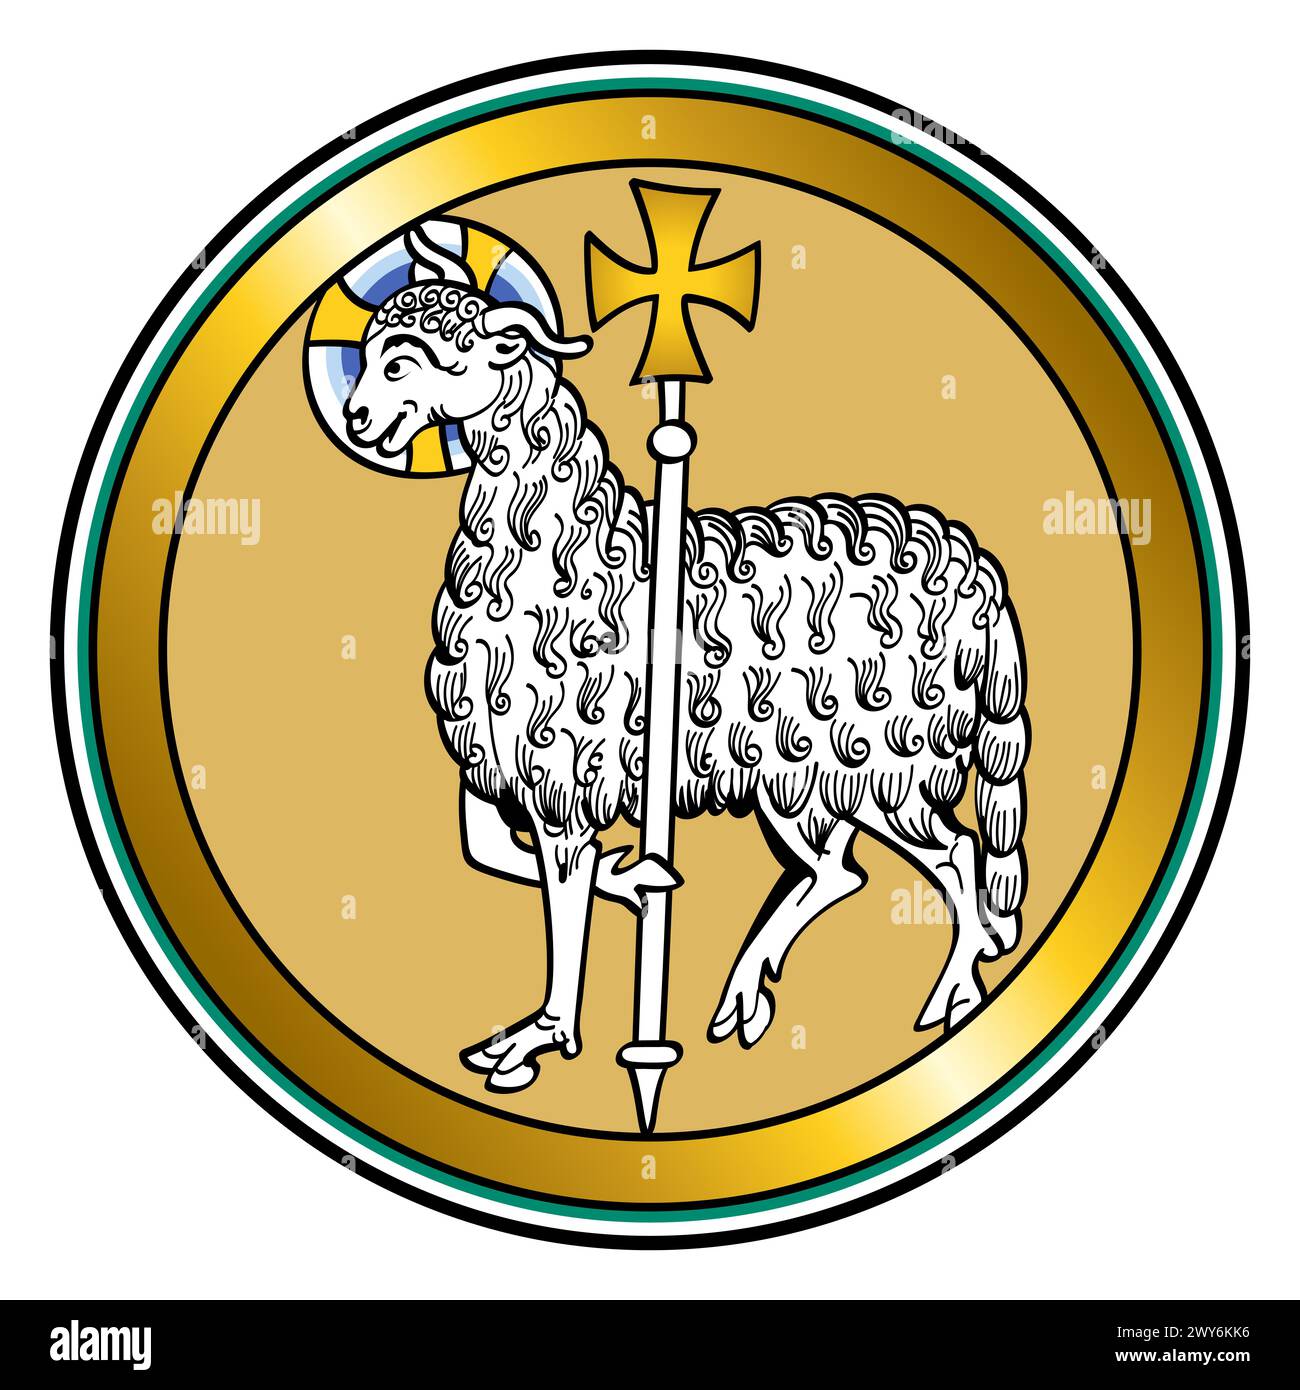 Agnus dei, Agnello di Dio, rappresentazione visiva medievale di Gesù come agnello, che porta un alone e tiene uno stendardo con una croce, simboleggiando la vittoria. Foto Stock